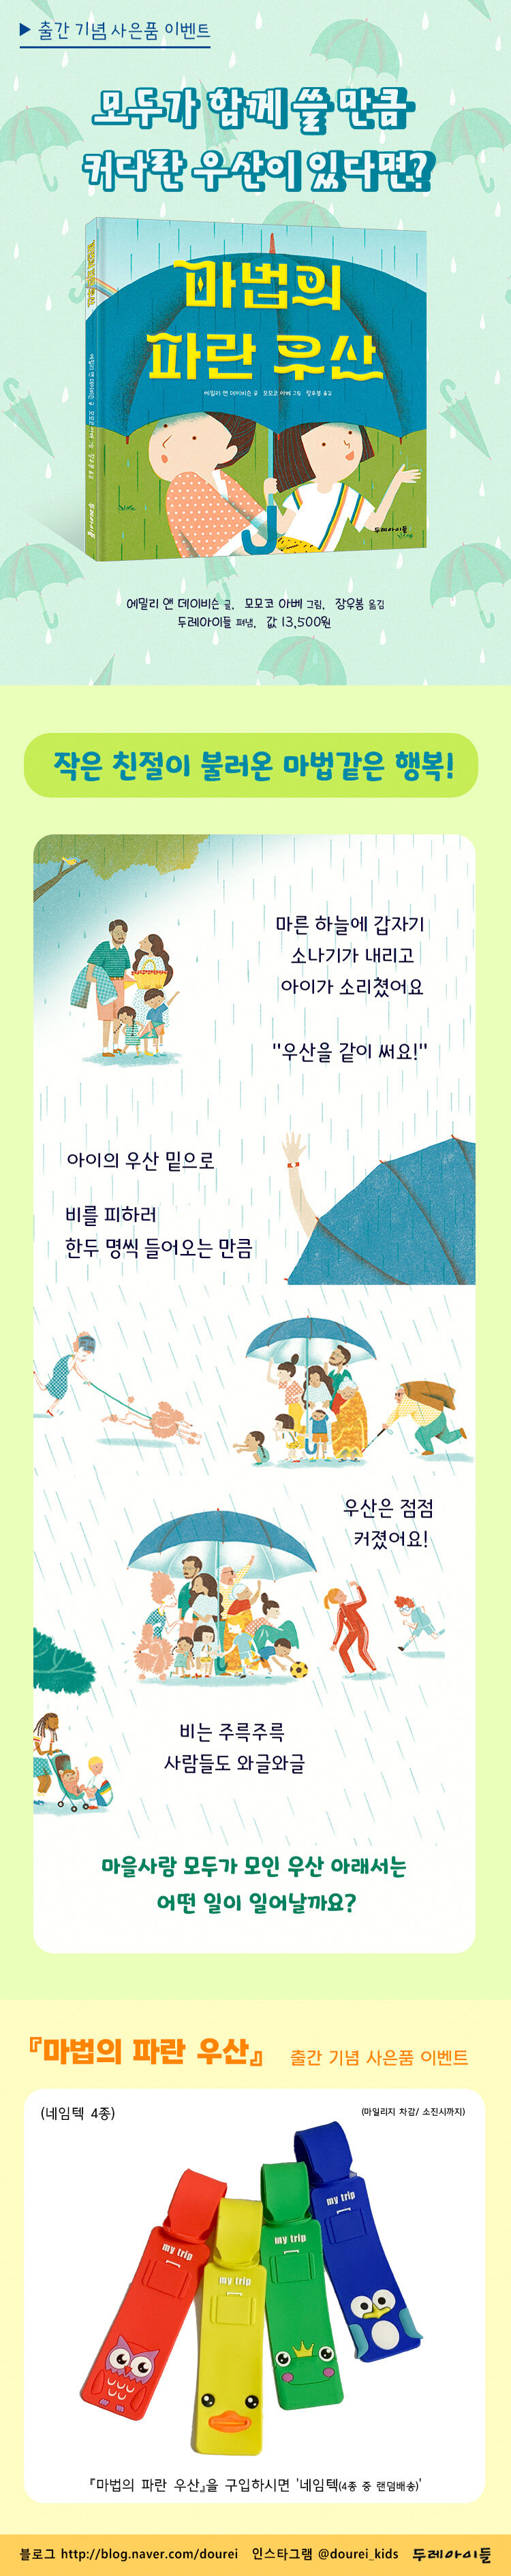 <마법의 파란 우산> 출간 기념 이벤트